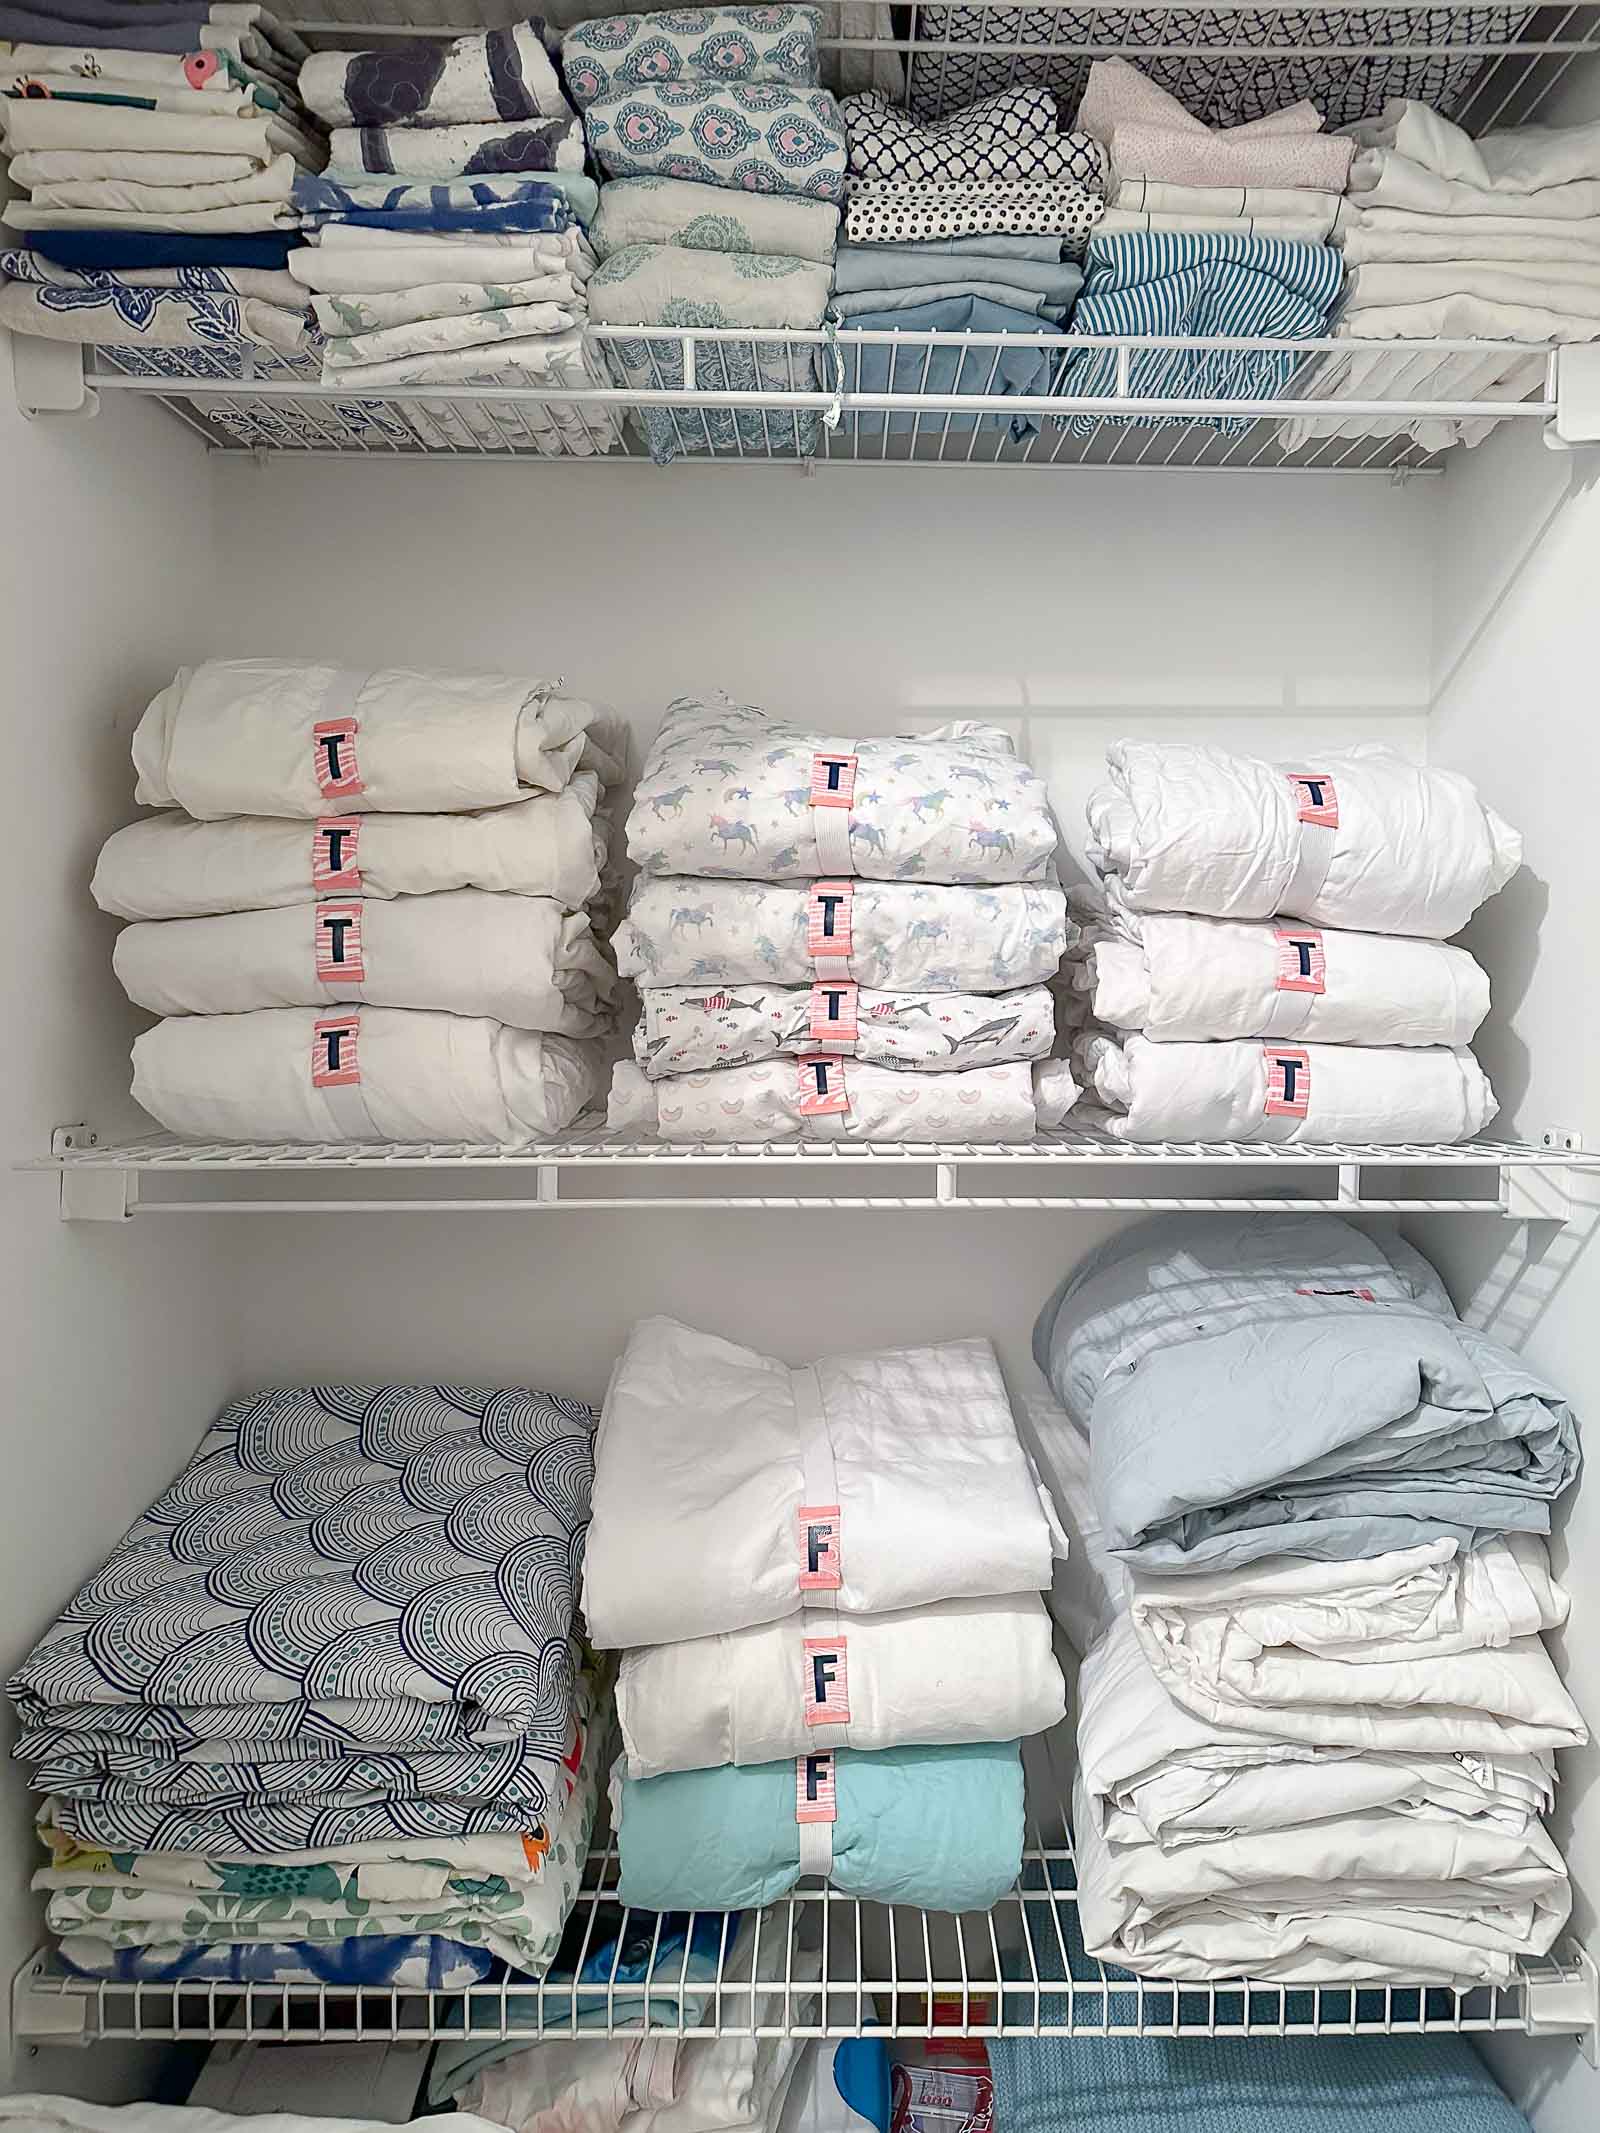 organizing a linen closet